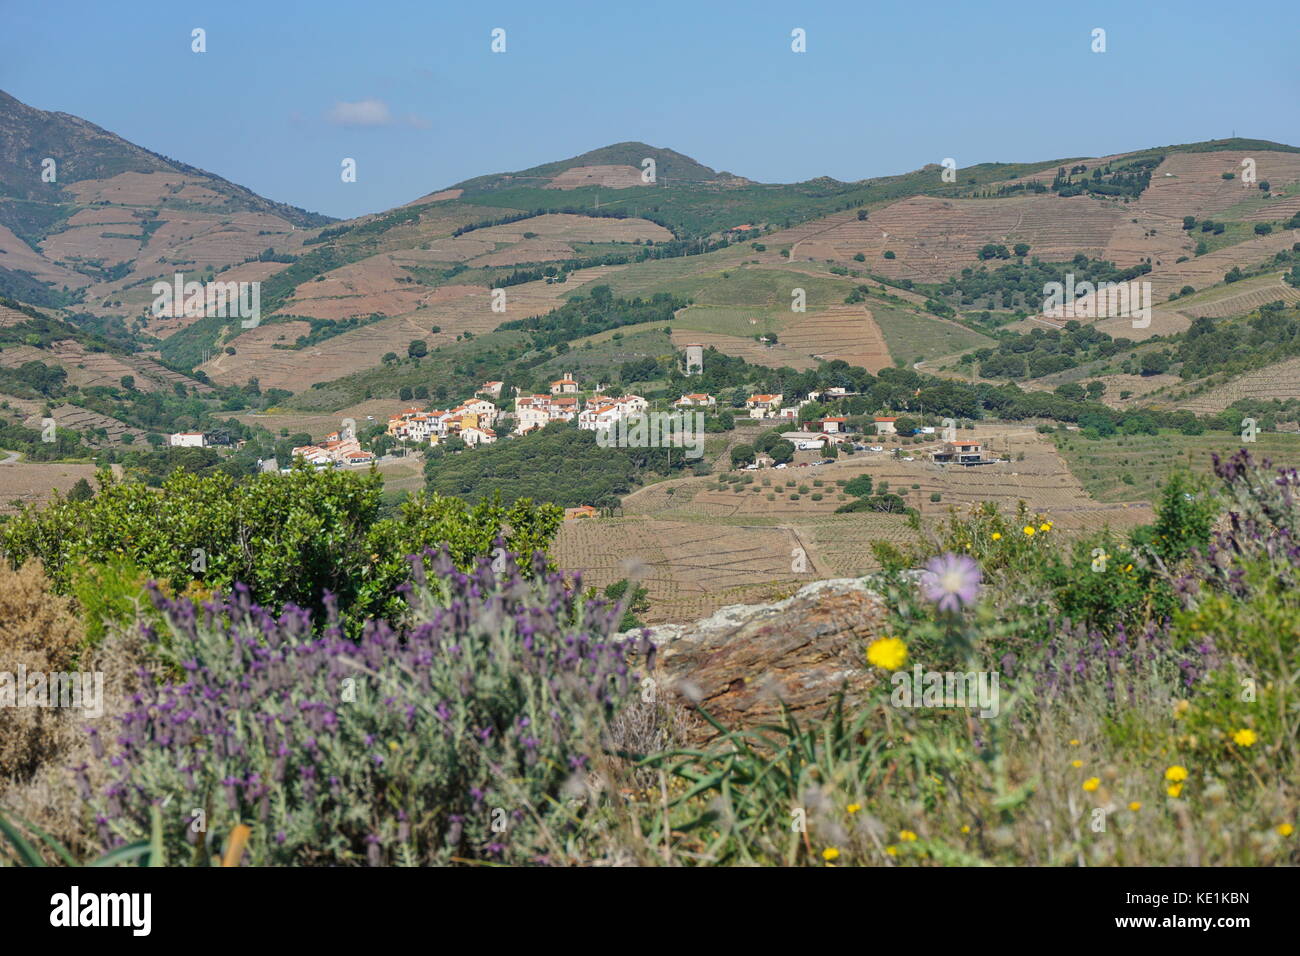 Francia paisaje paisaje mediterráneo, viñedos y campos de la aldea de cosprons, Languedoc Roussillon, Pirineos Orientales Foto de stock